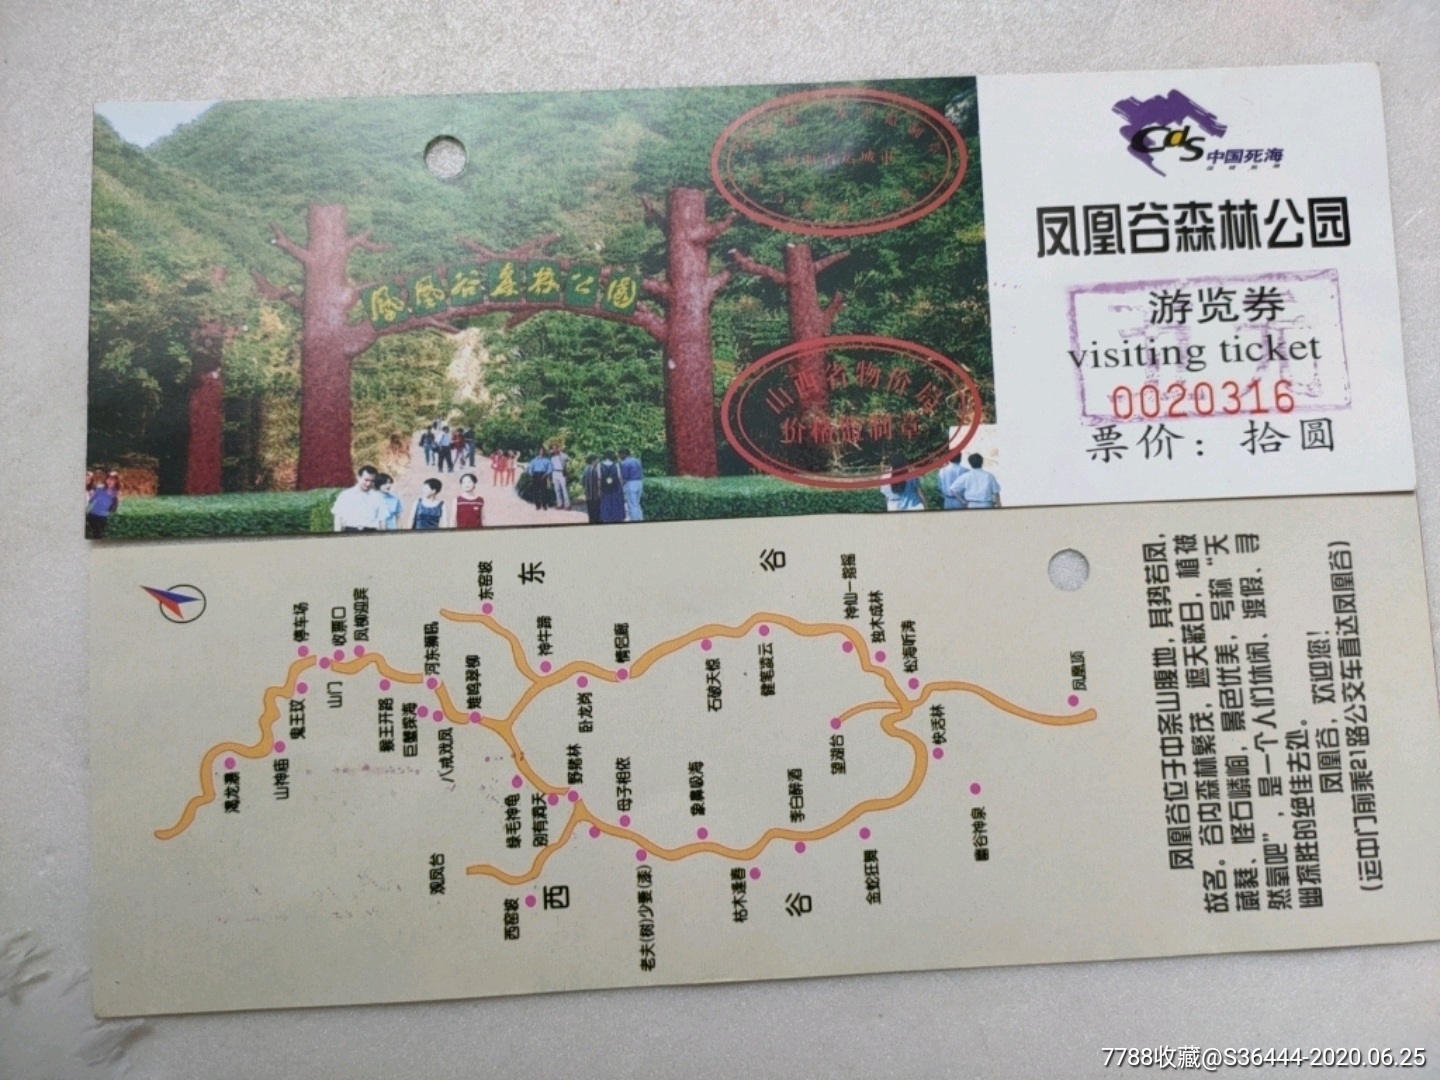 凤凰谷森林公园游览券(改五元),旅游景点门票